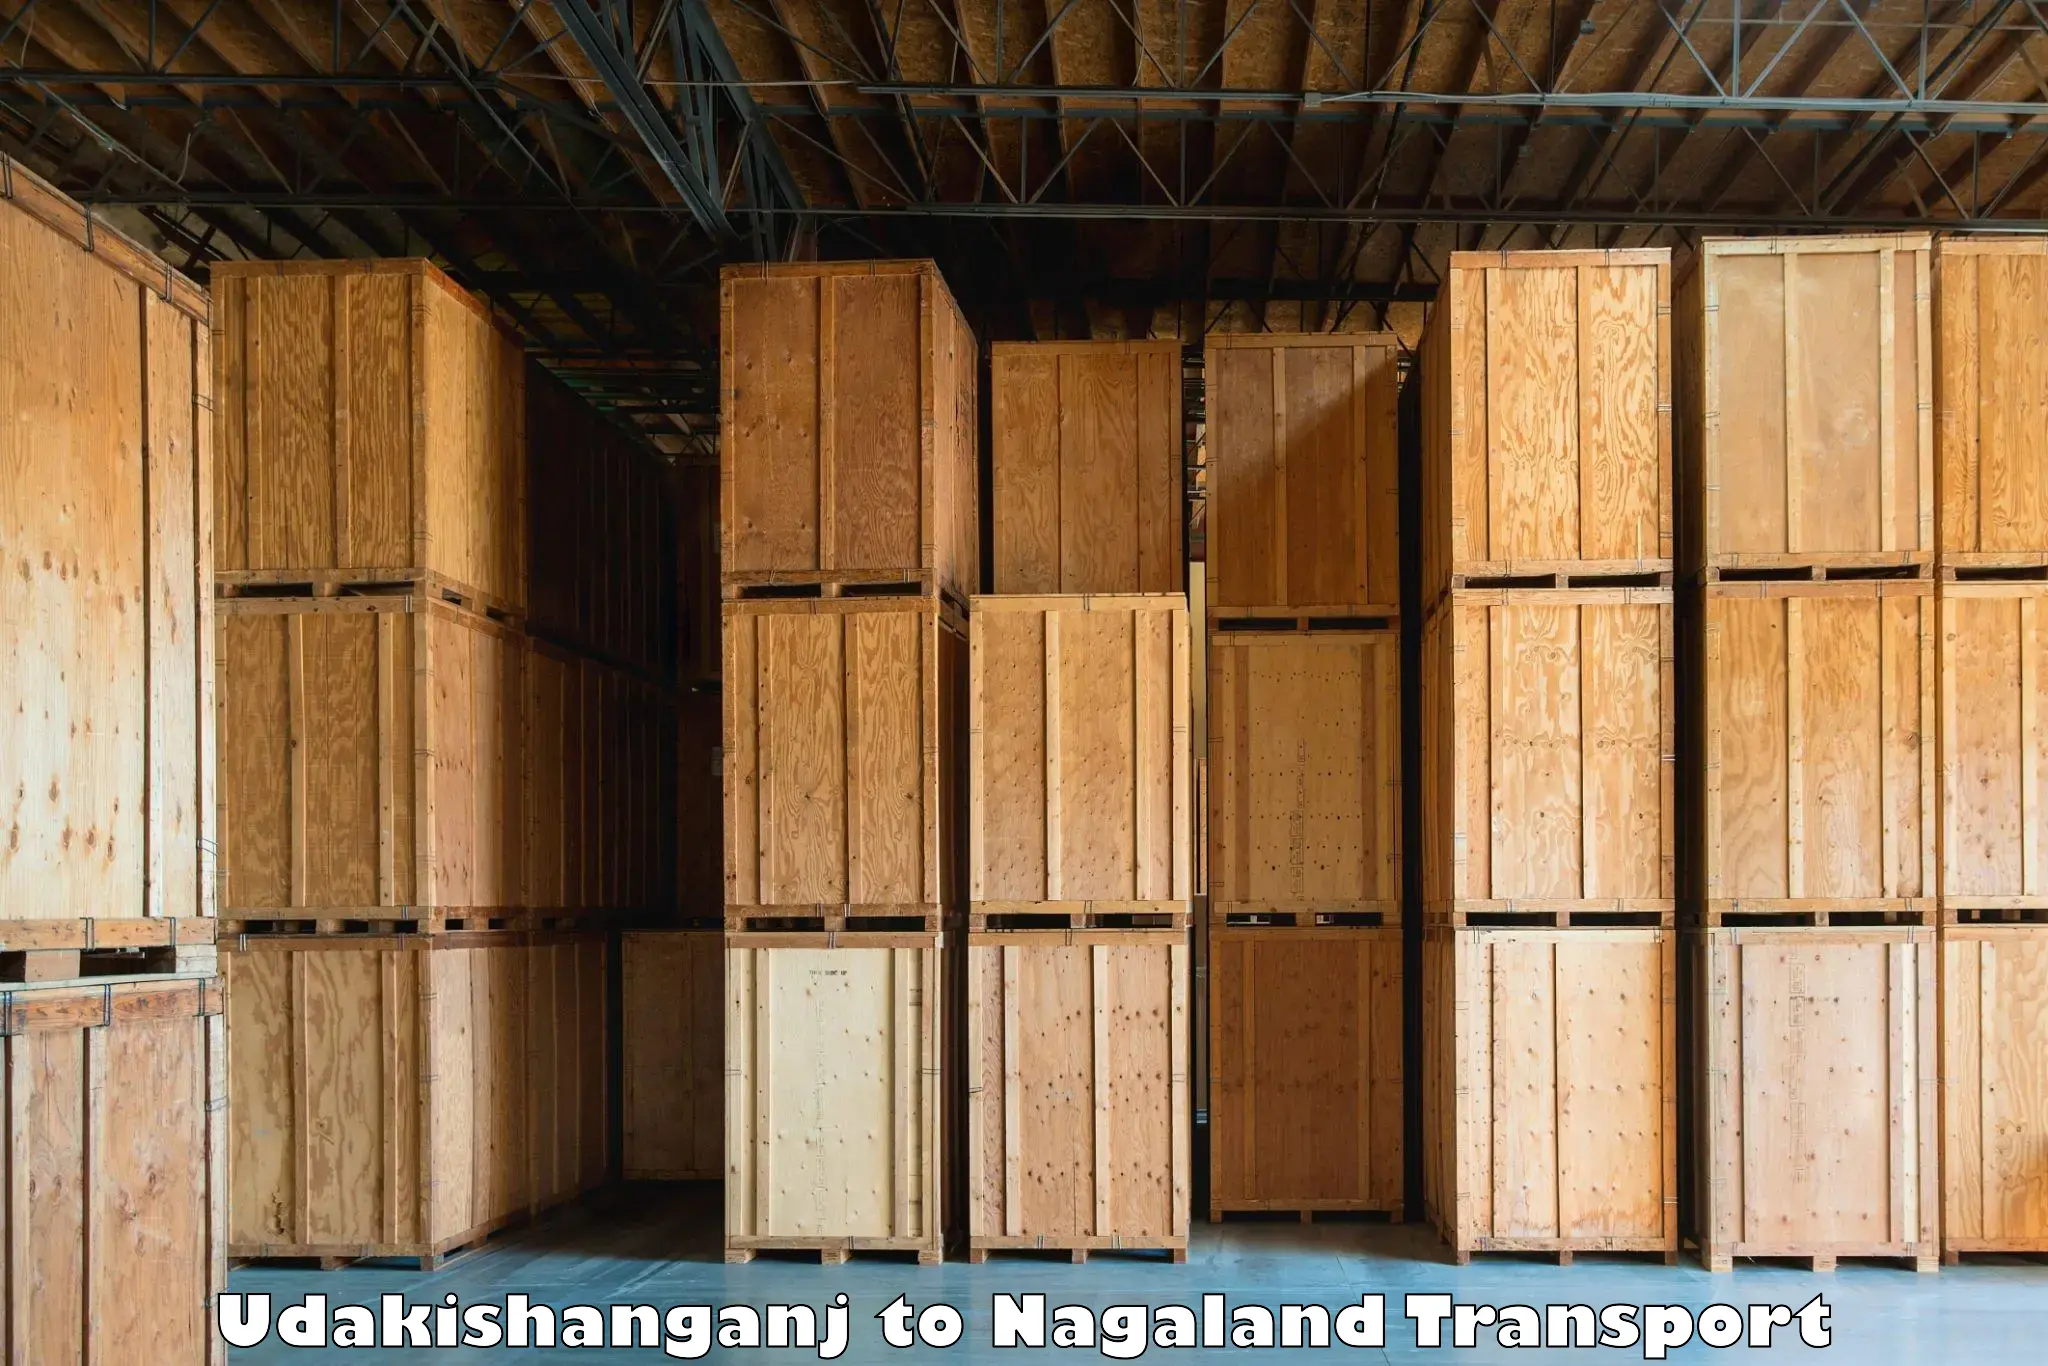 Express transport services Udakishanganj to Nagaland